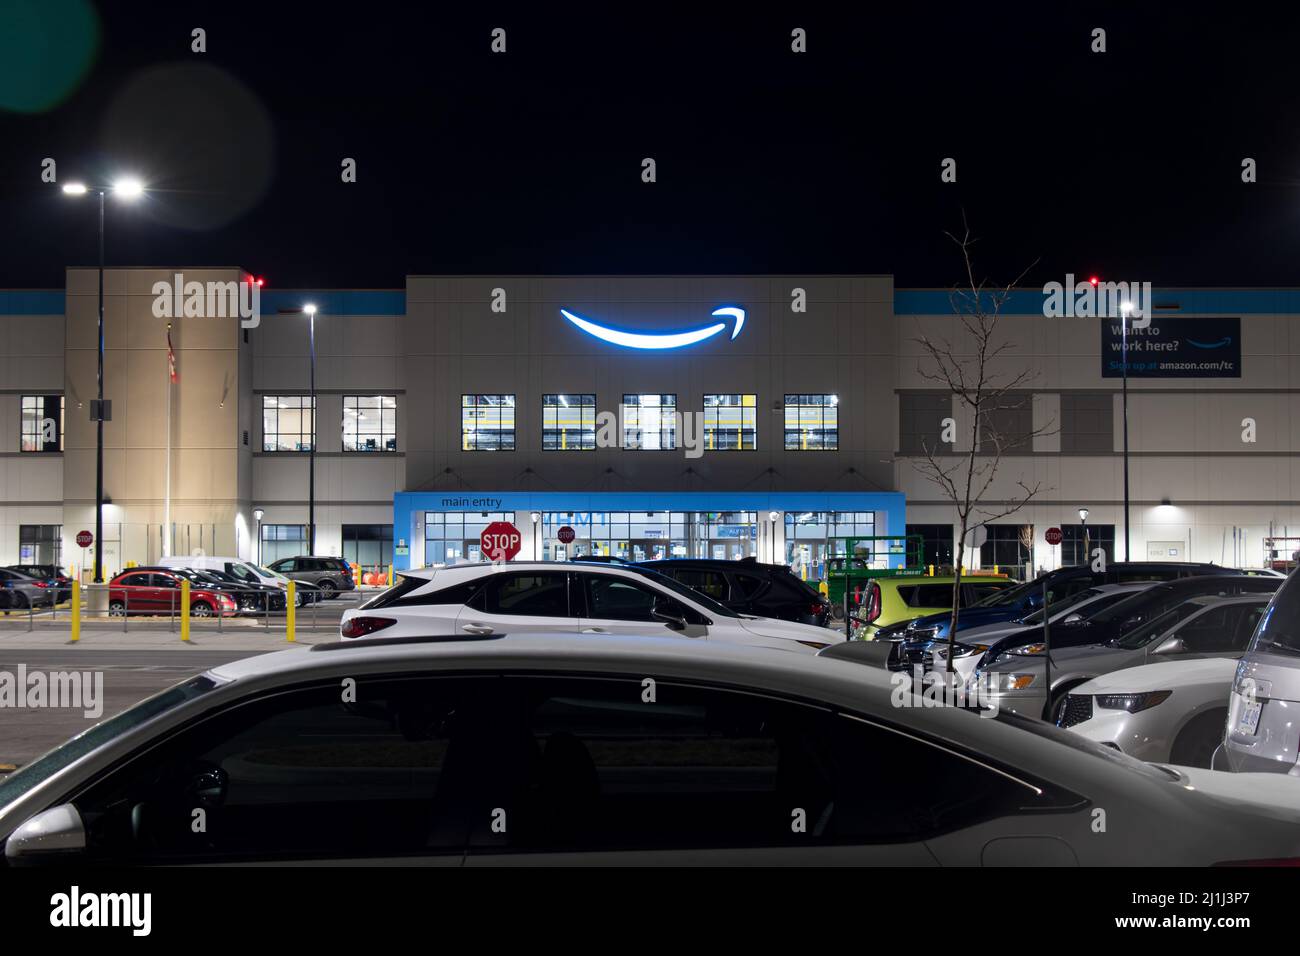 El logotipo de Amazon brilla en azul en la parte superior de la entrada principal de un nuevo centro logístico cerca de un aeropuerto. Foto de stock